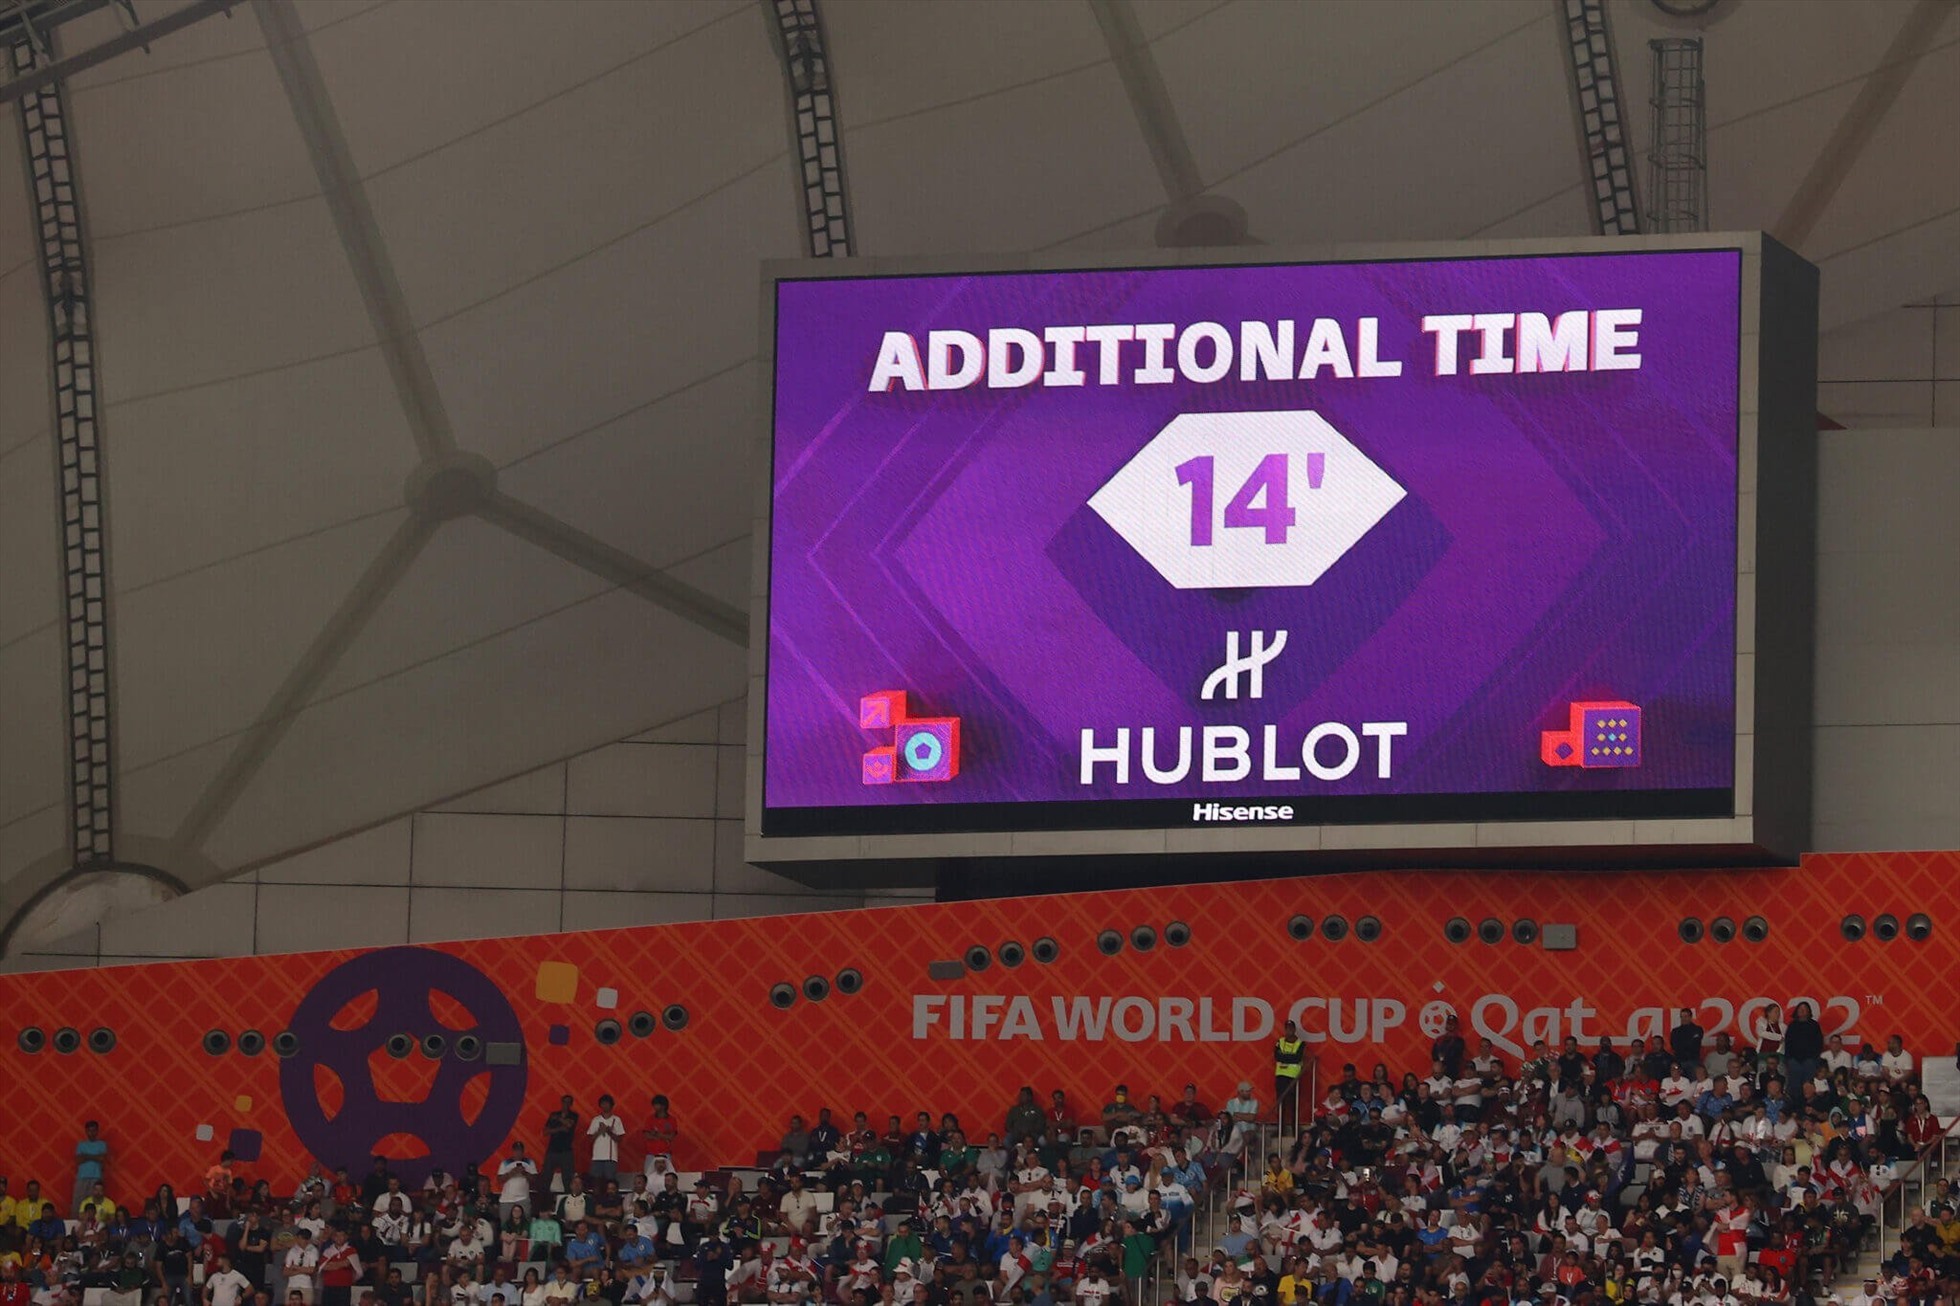 Hiệp 2 trận Anh vs Iran chứng kiến thời gian bù giờ kỷ lục lên đến 14 phút. Ảnh: FIFA